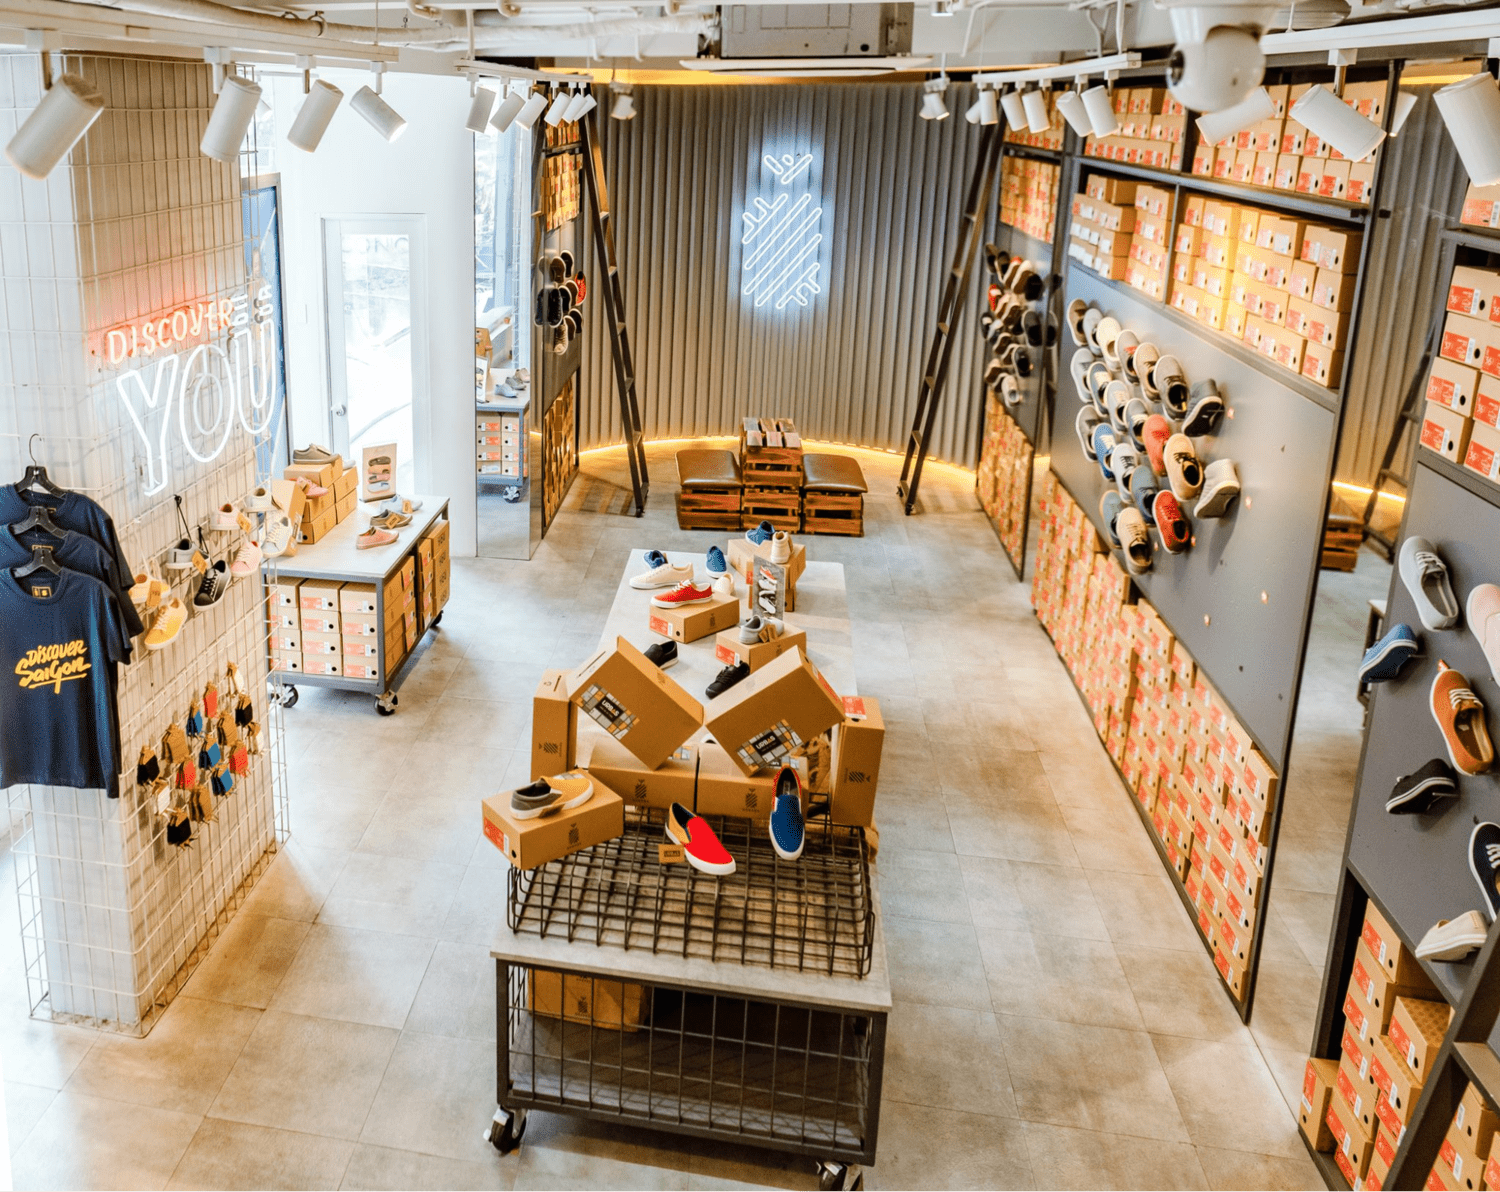 Thiết kế không gian cửa hàng sử dụng chất liệu nhám, thô đậm chất “phố